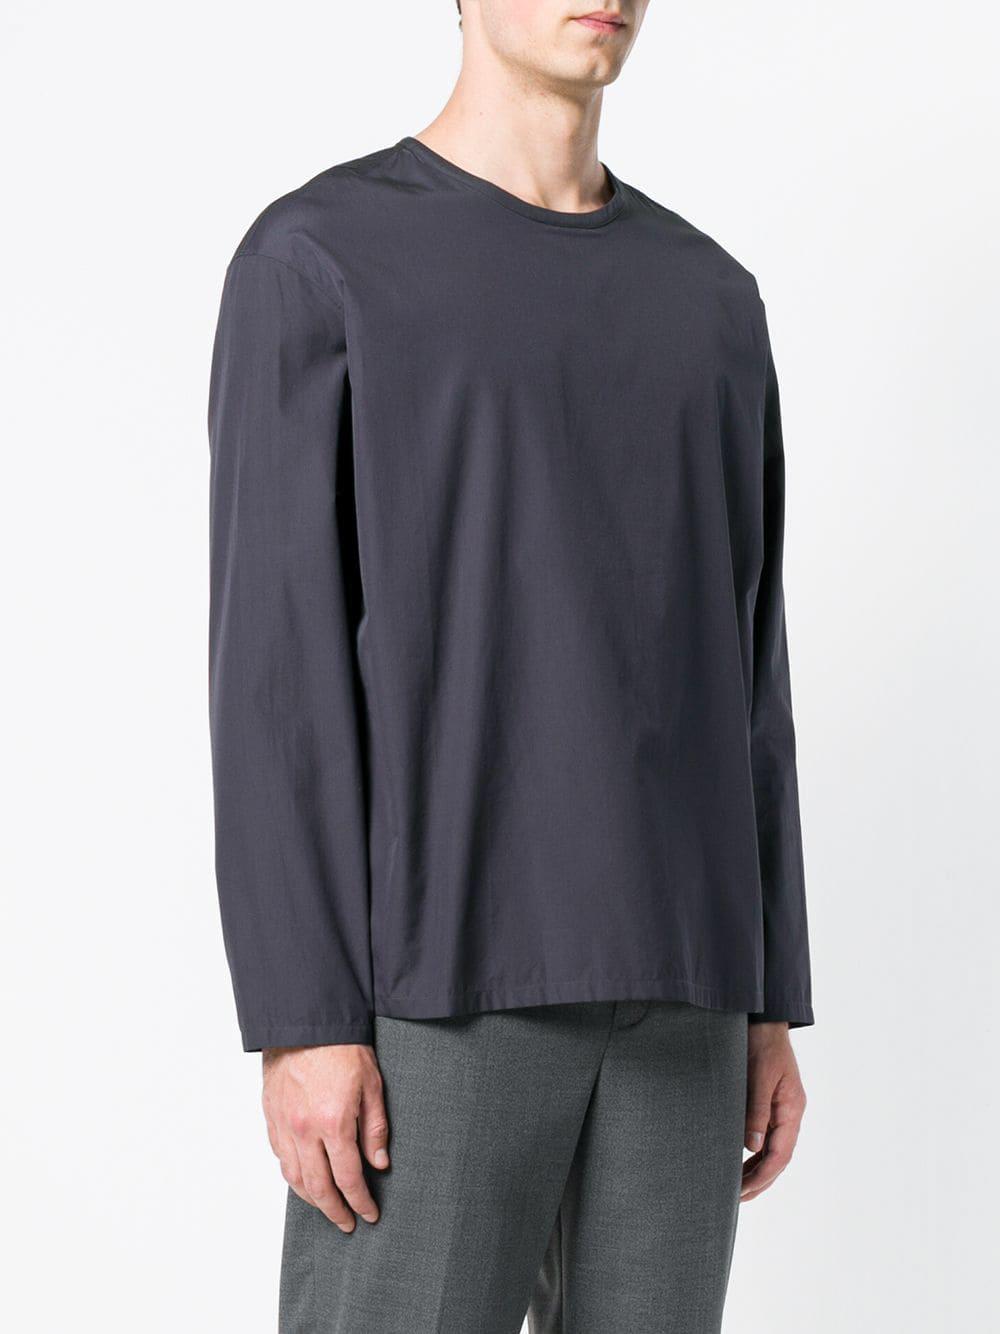 Lemaire Cotton Plain T-shirt in Blue for Men - Lyst